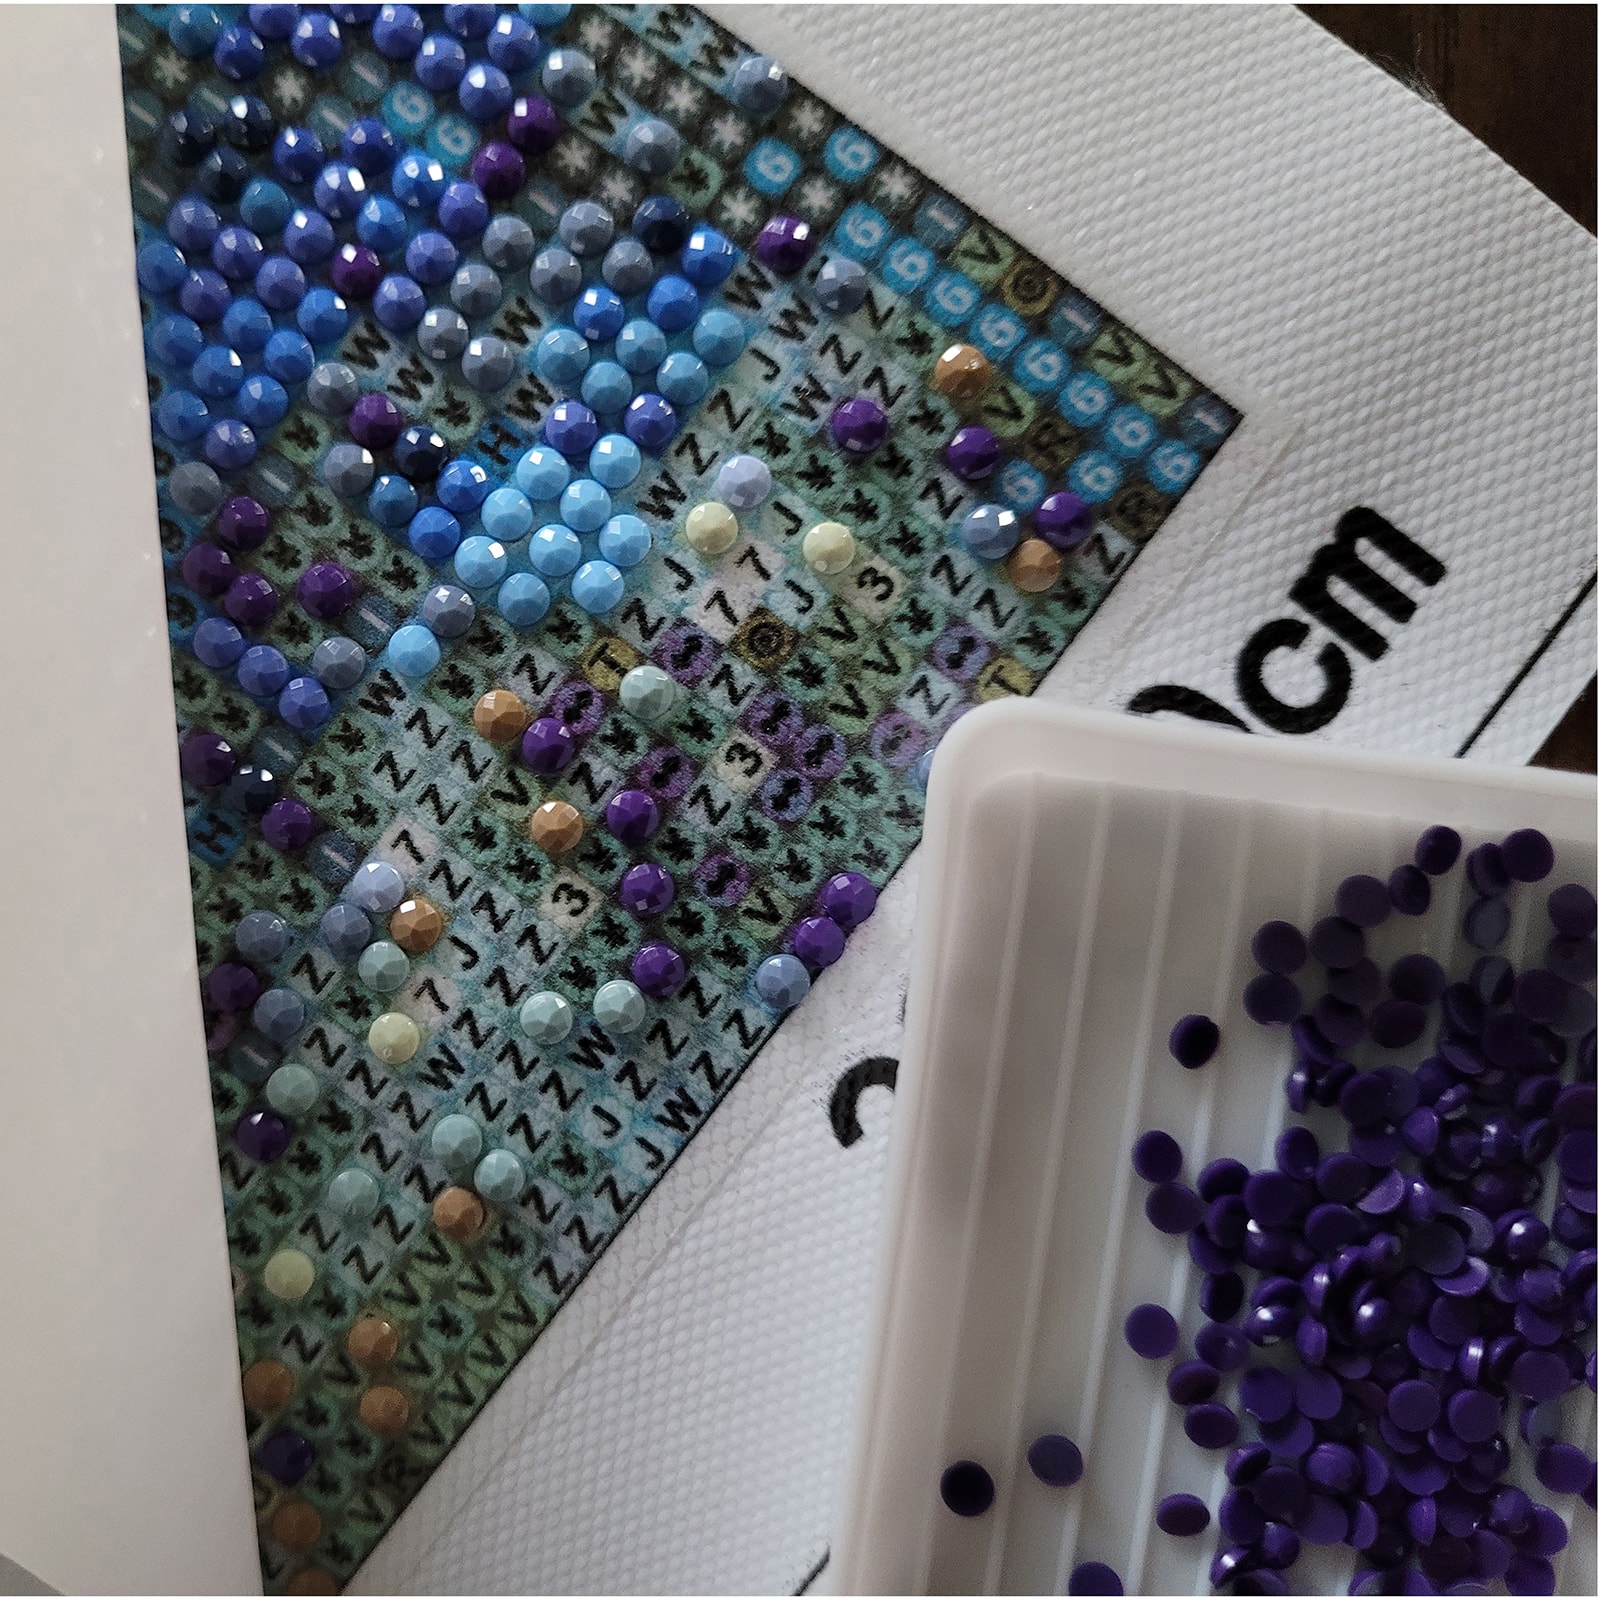 Sparkly Selections Beginner Starry Night Diamond Painting Kit, Round Diamonds